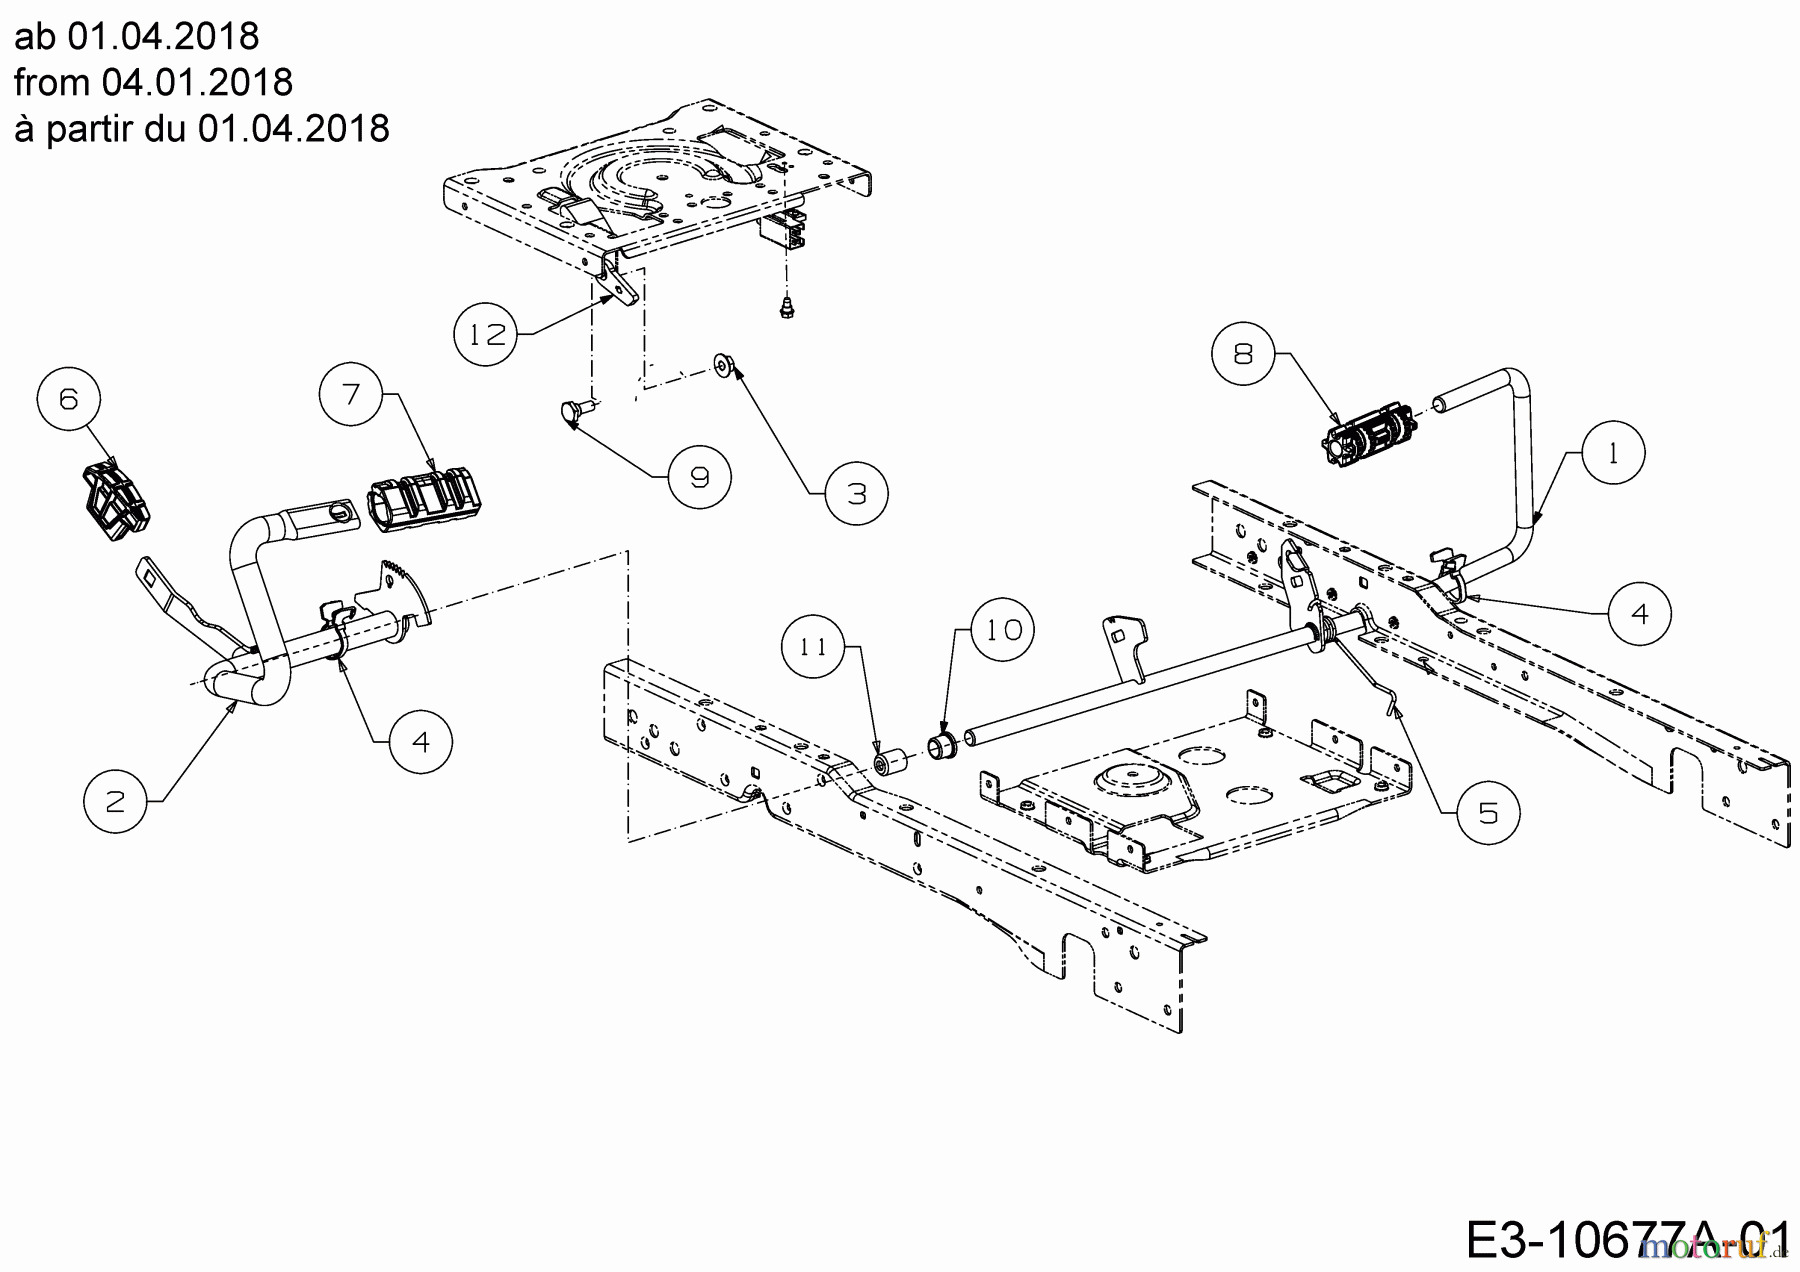  Cub Cadet Lawn tractors XT2 PS117I 13BZA1CN603  (2018) Pedals from 04.01.2018